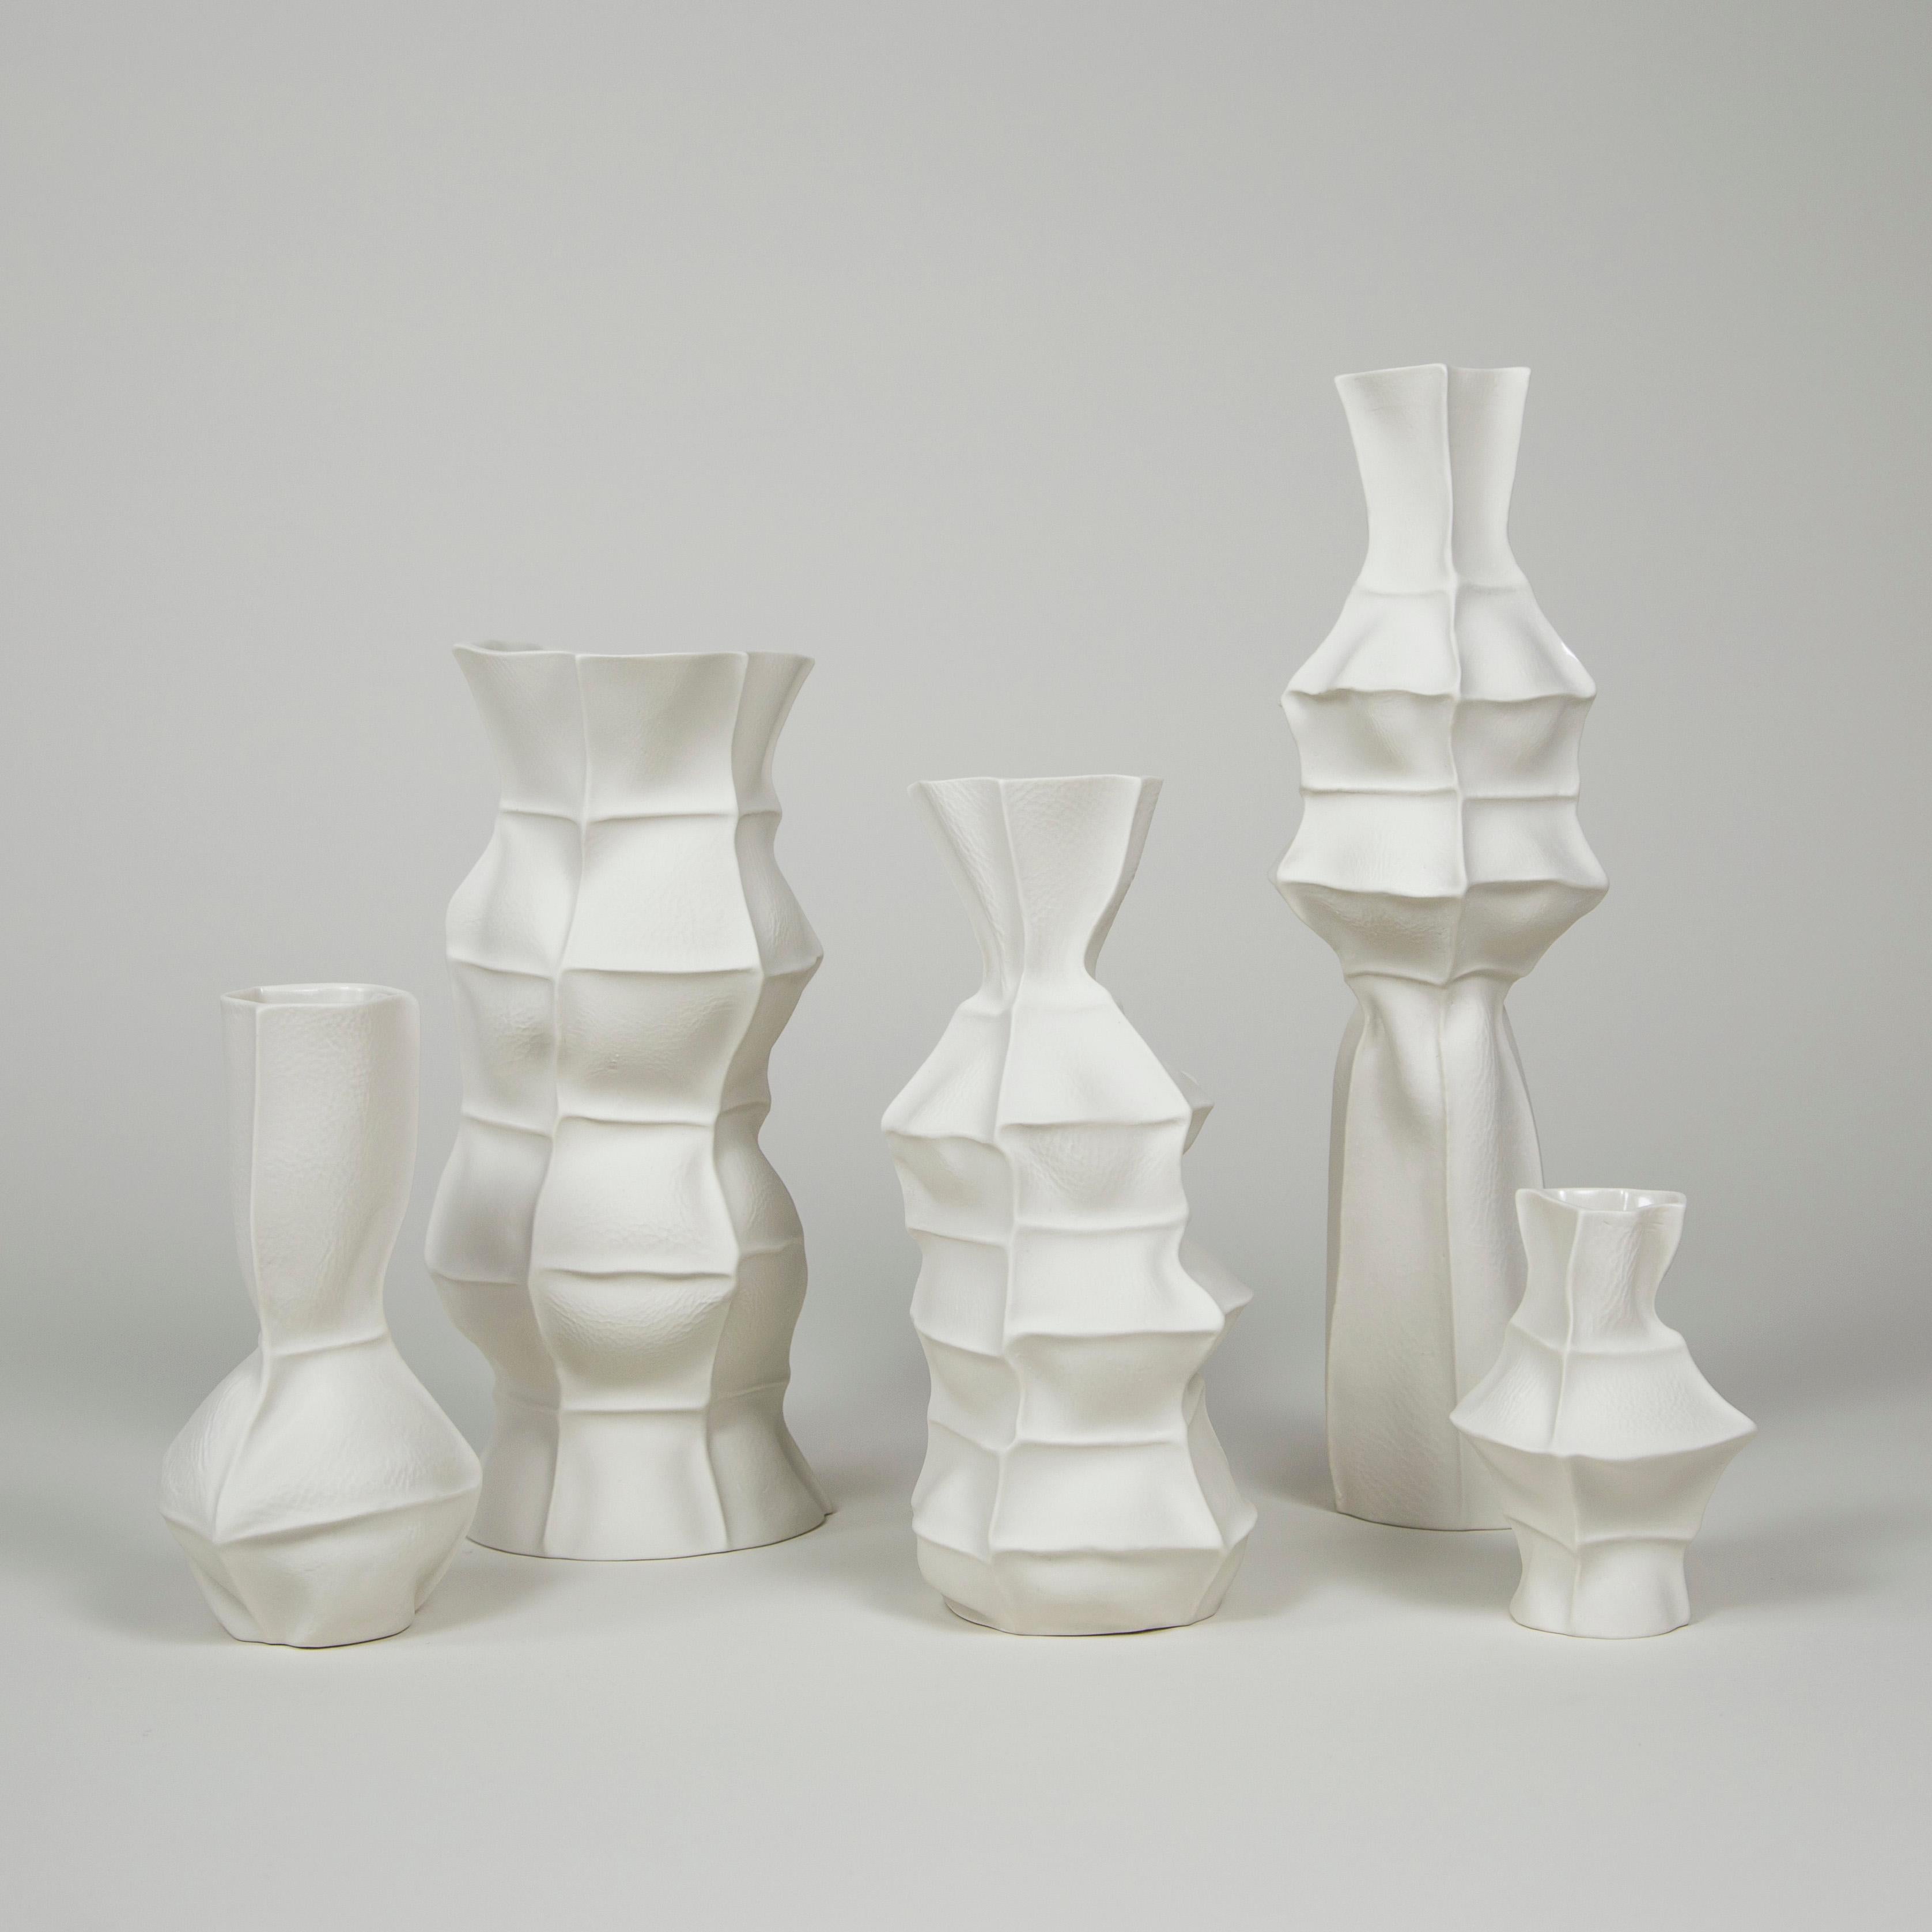 Ein Set aus 5 taktilen und organischen Porzellanvasen mit lederartiger Außenfläche und klar glasierter Innenseite. Aufgrund des Herstellungsprozesses ist jedes Stück ein Unikat. Das Set enthält 5 Vasen, wie auf dem Bild gezeigt. 

Dieses Vasen-Set